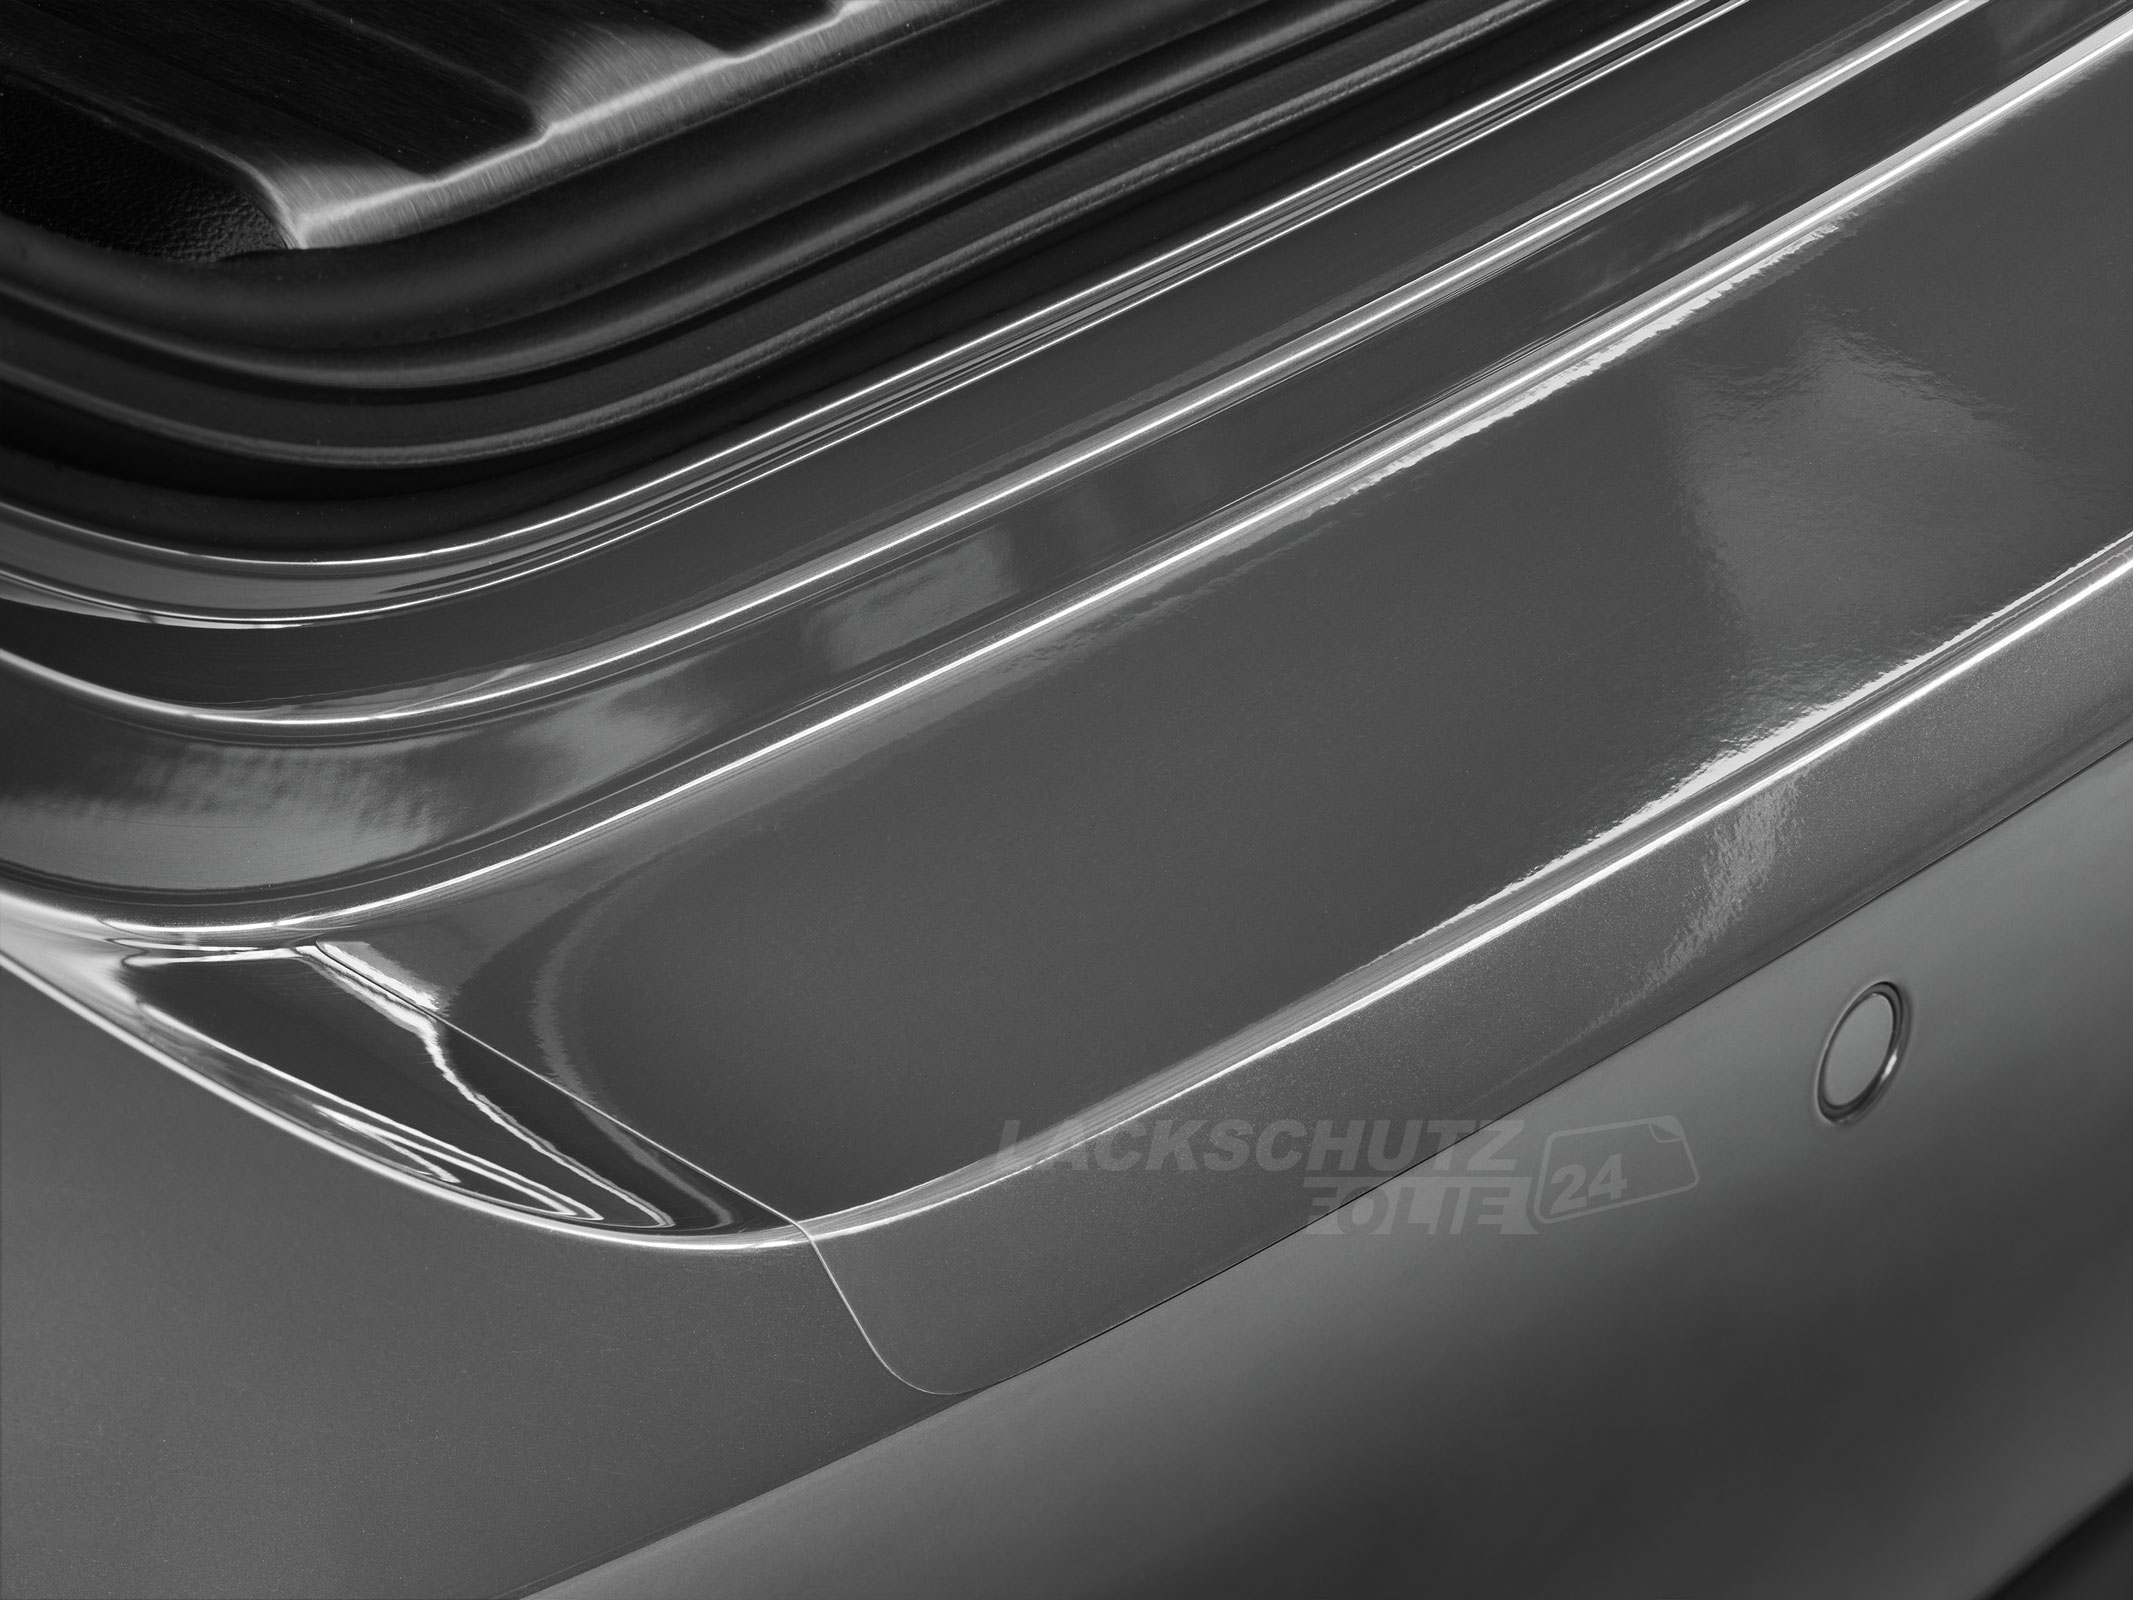 Ladekantenschutzfolie - Transparent Glatt Hochglänzend für Audi A4 Avant (Kombi) B8, Typ 8K, Facelift, BJ 11/2011-2015